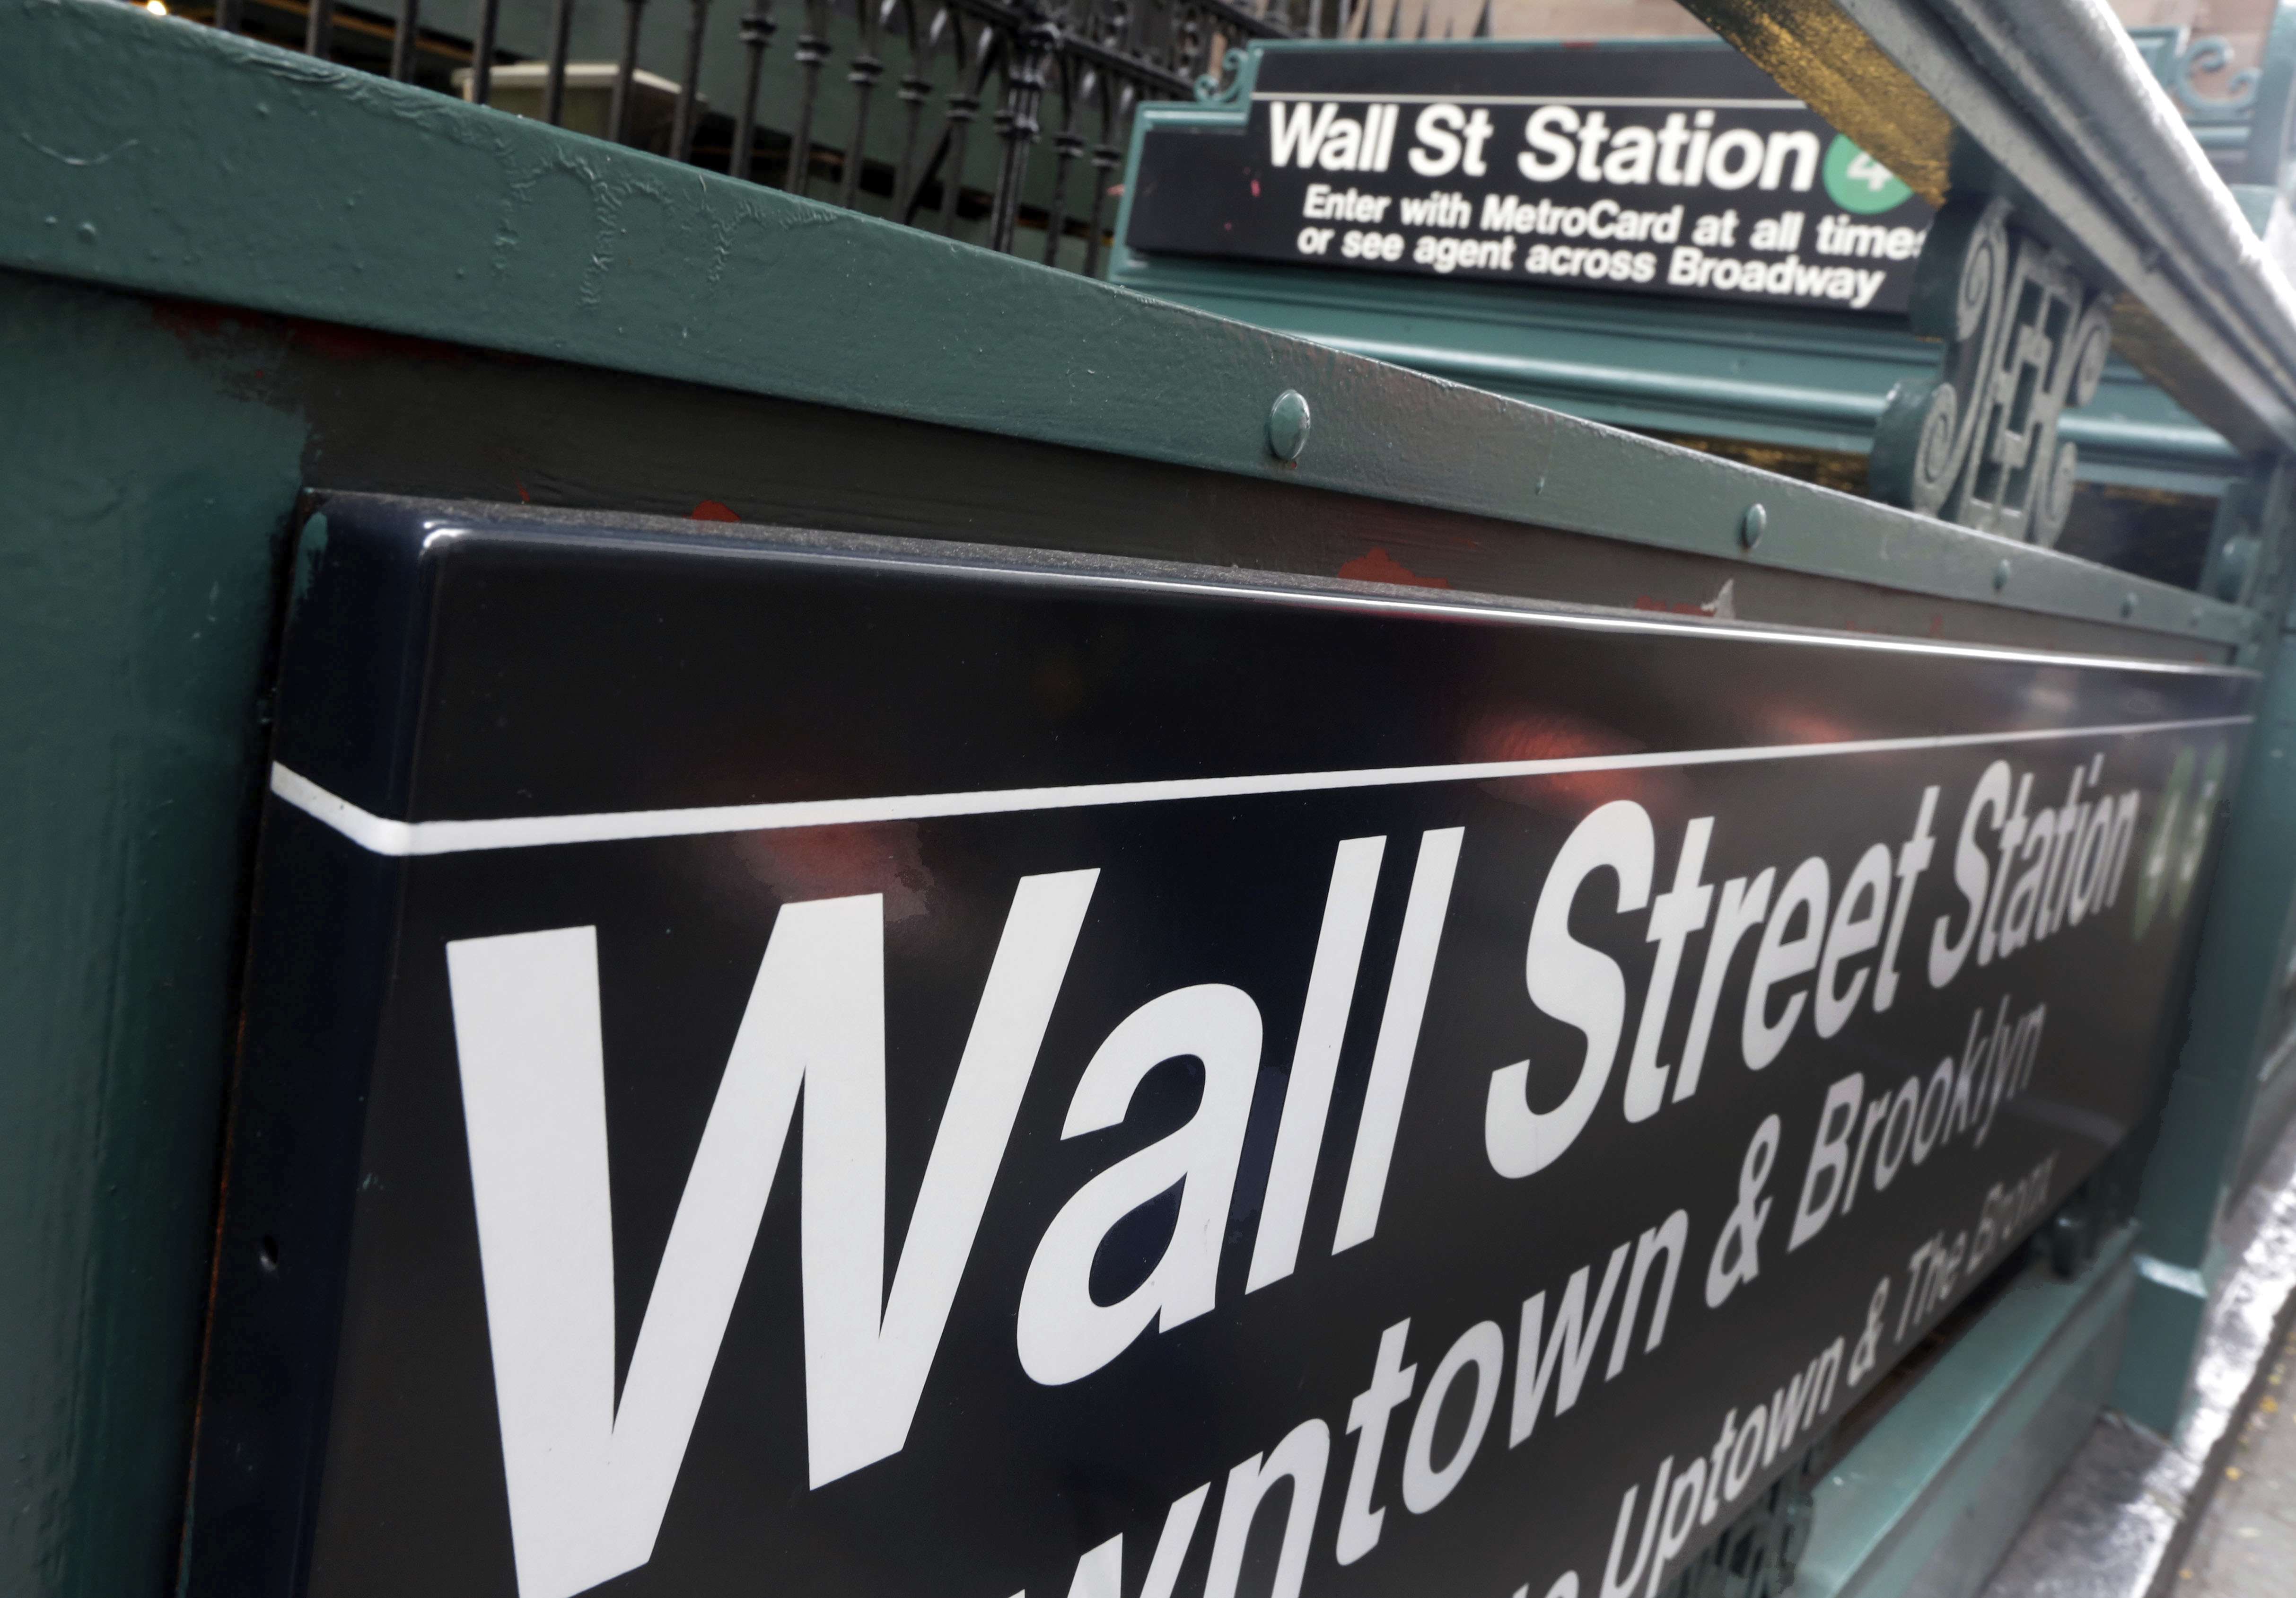 Parada de metro de Wall Street en Broadway, en el distrito financiero de Nueva York.  Foto: AP